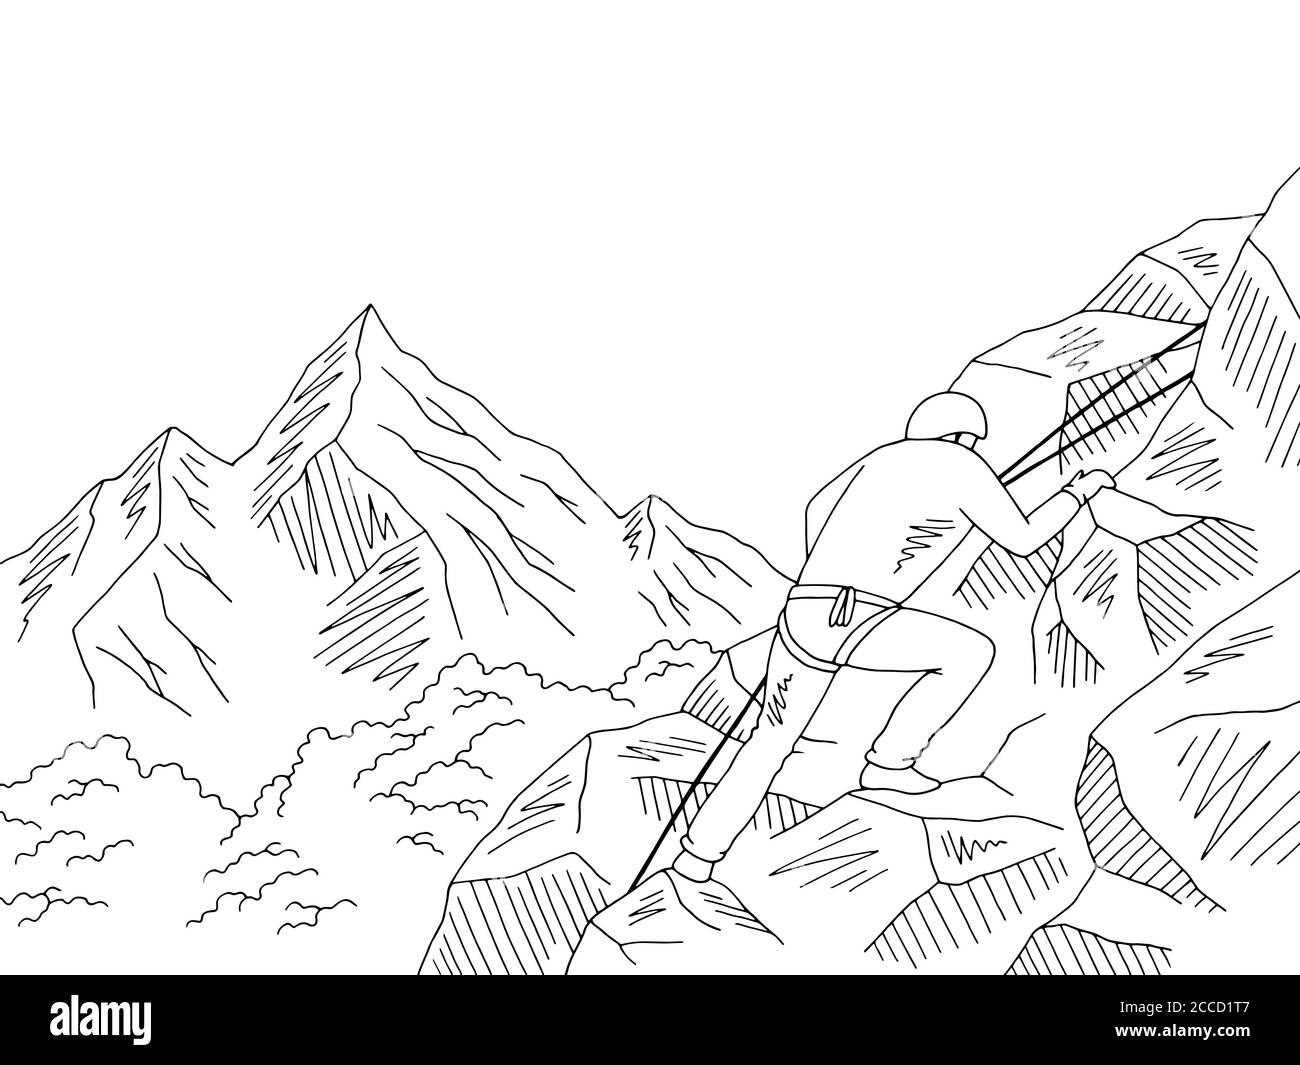 Alpiniste escalade d'une falaise graphique de montagne noir blanc paysage esquisse vecteur d'illustration Illustration de Vecteur